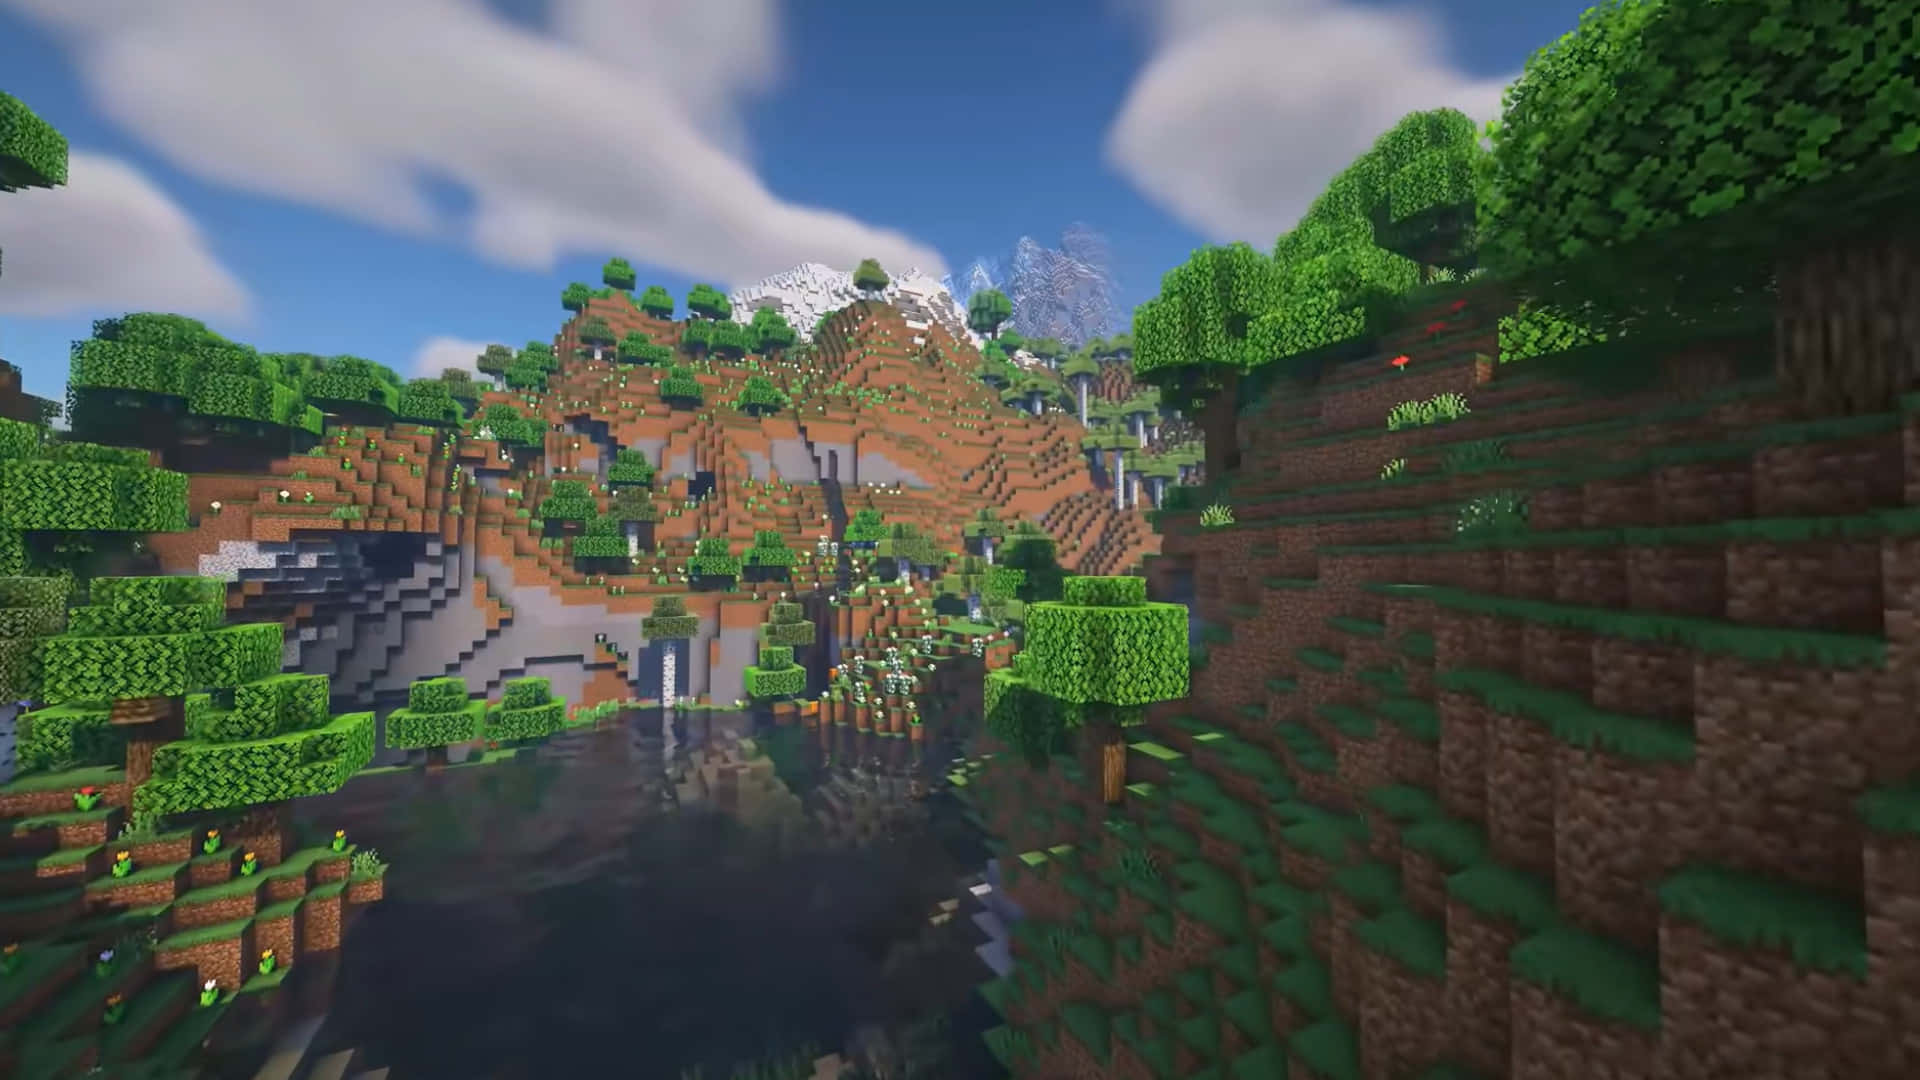 Imagende Montaña Con Río En Minecraft.